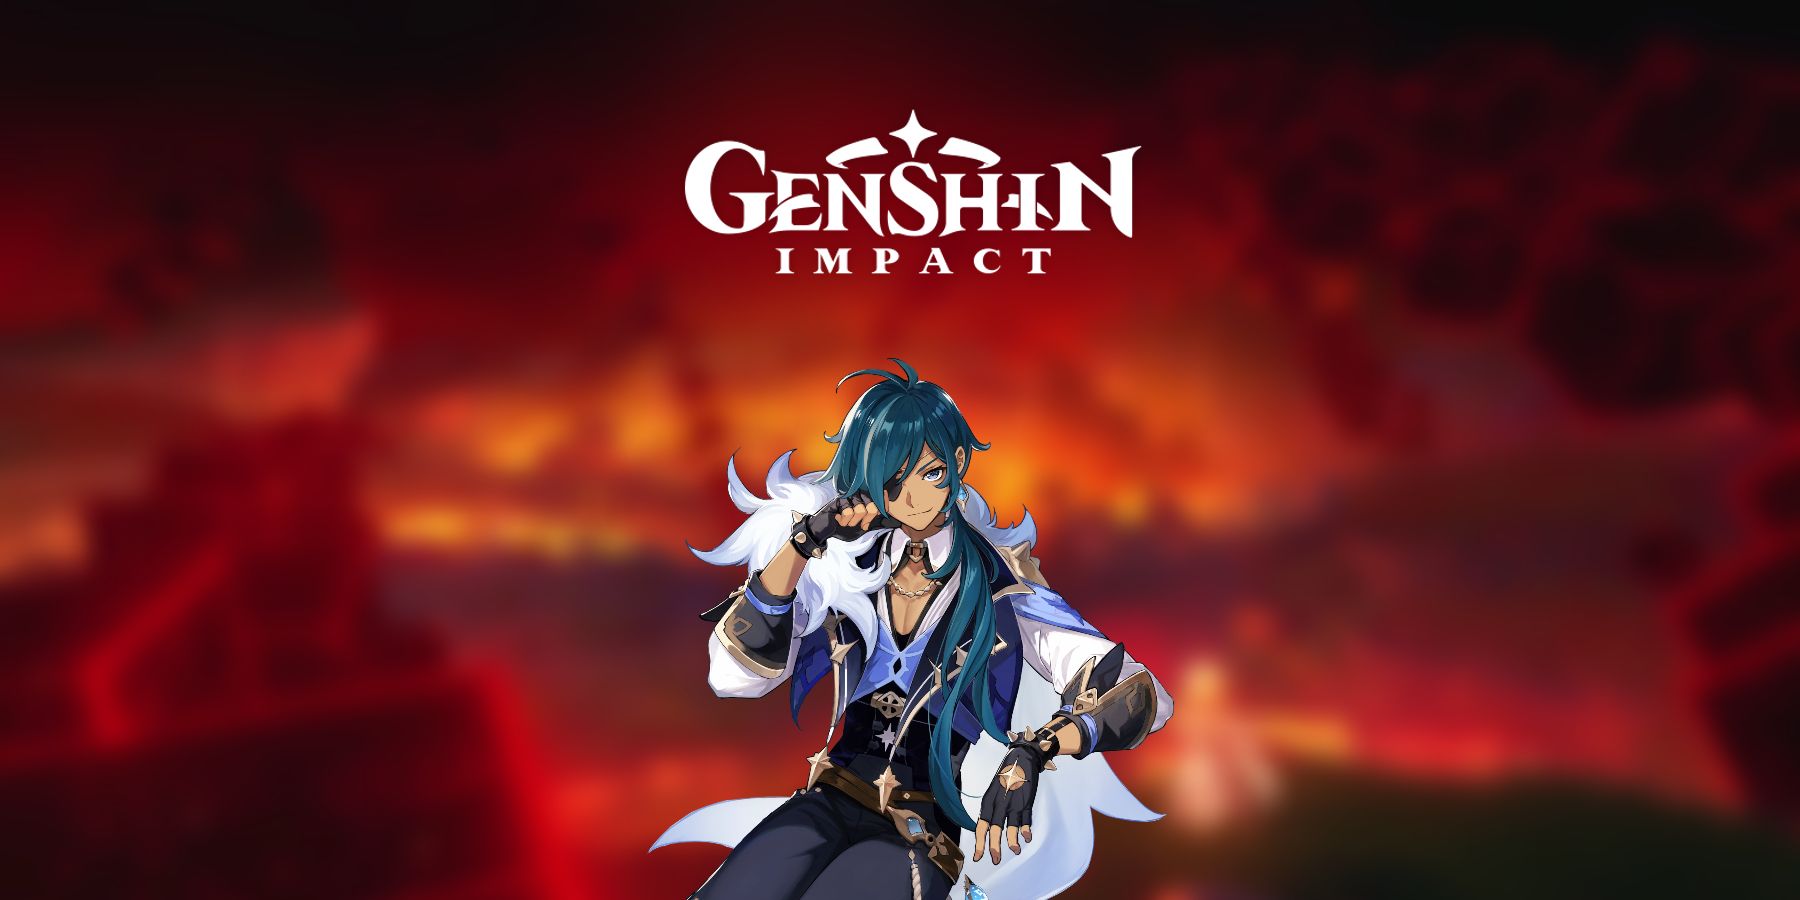 Dopad Genshin: Kaeya pochází ze země bez boha